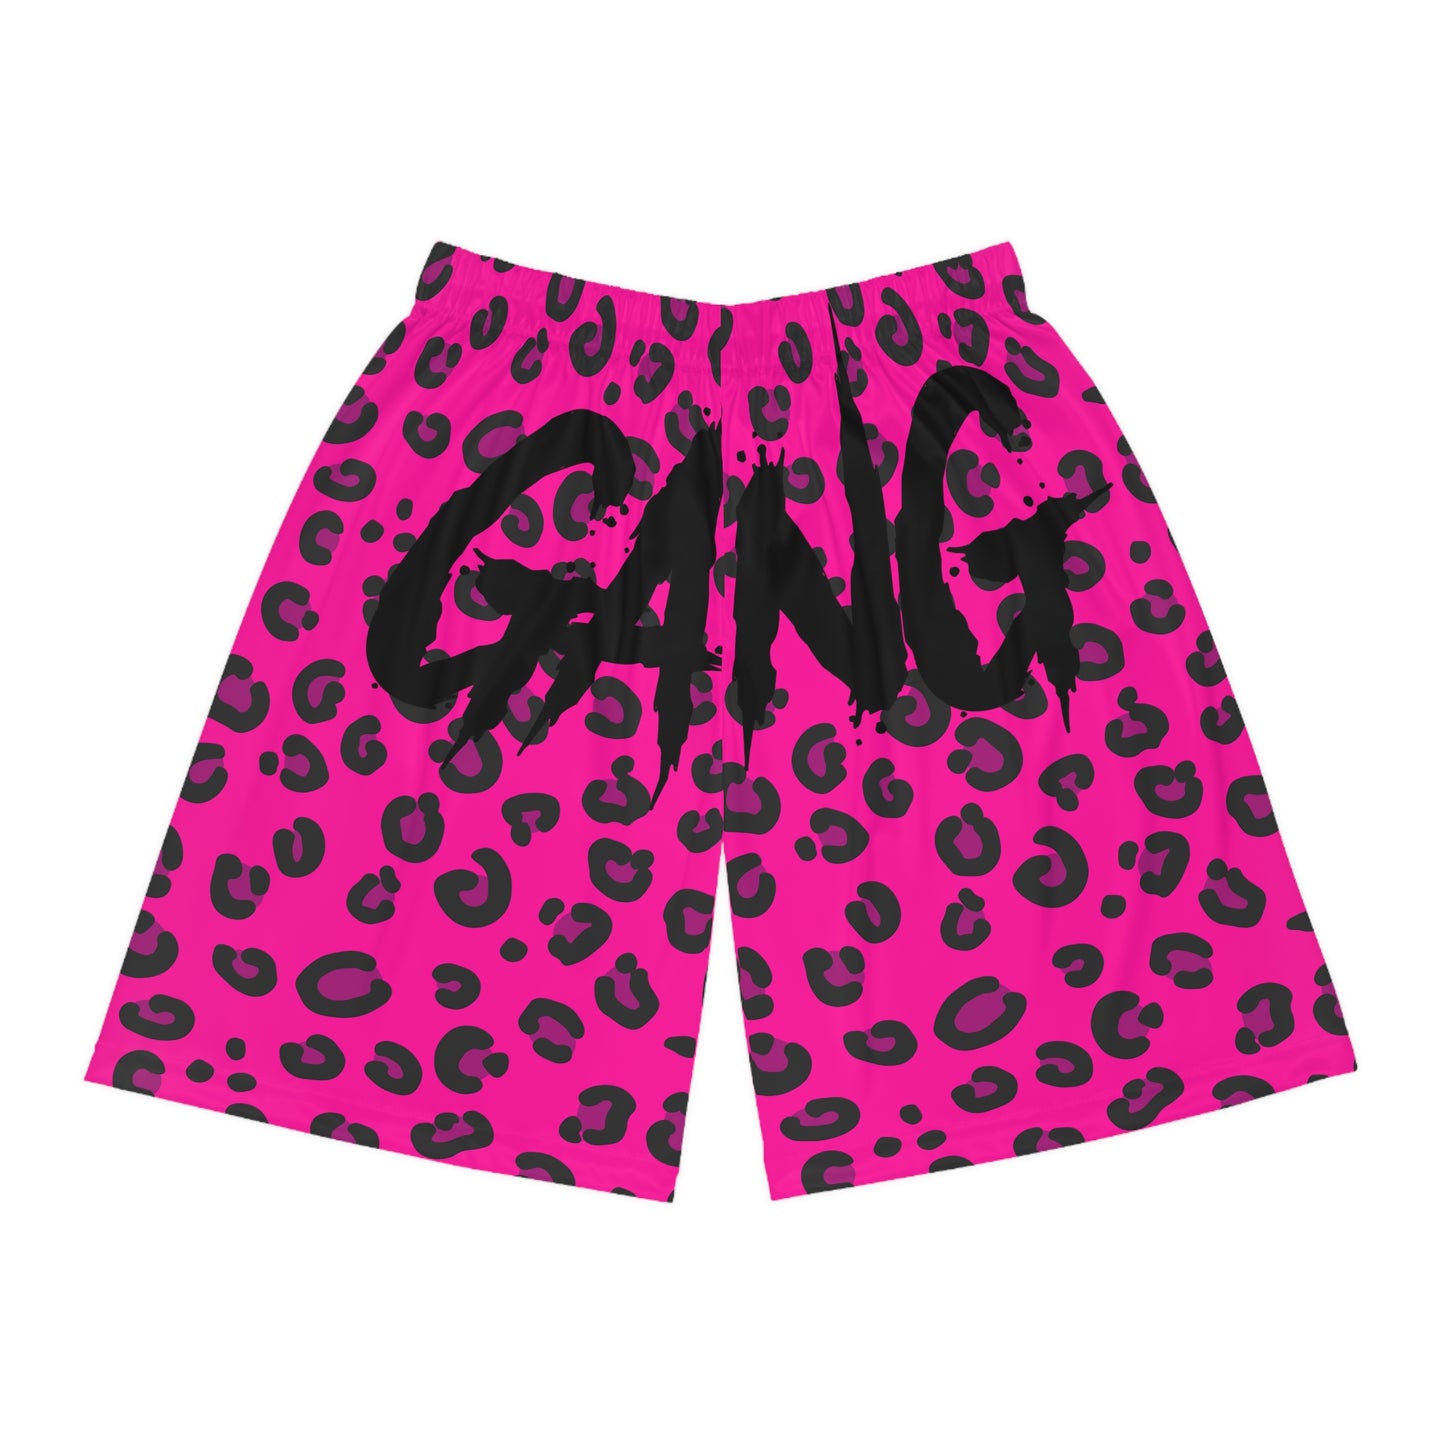 Gutter Cat Gang Pink Leopard Basketball Shorts